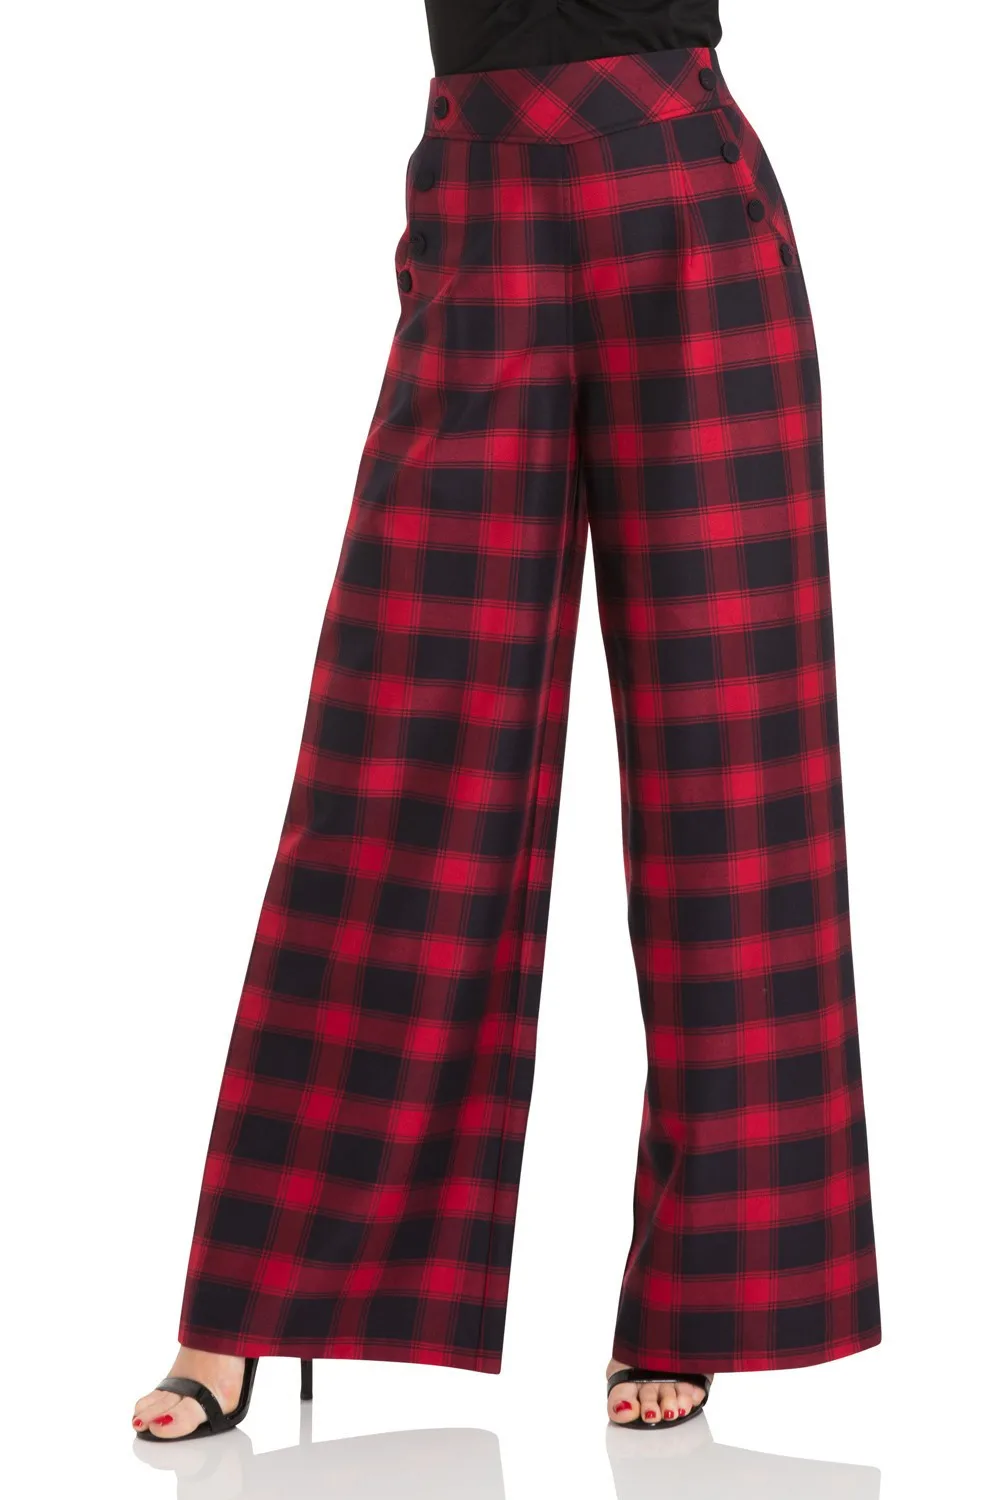 40-Женские винтажные 40 s Рита тартан расклешенные брюки красного цвета с завышенной талией широкие женские укороченные брюки больших размеров pinup одежда брюки